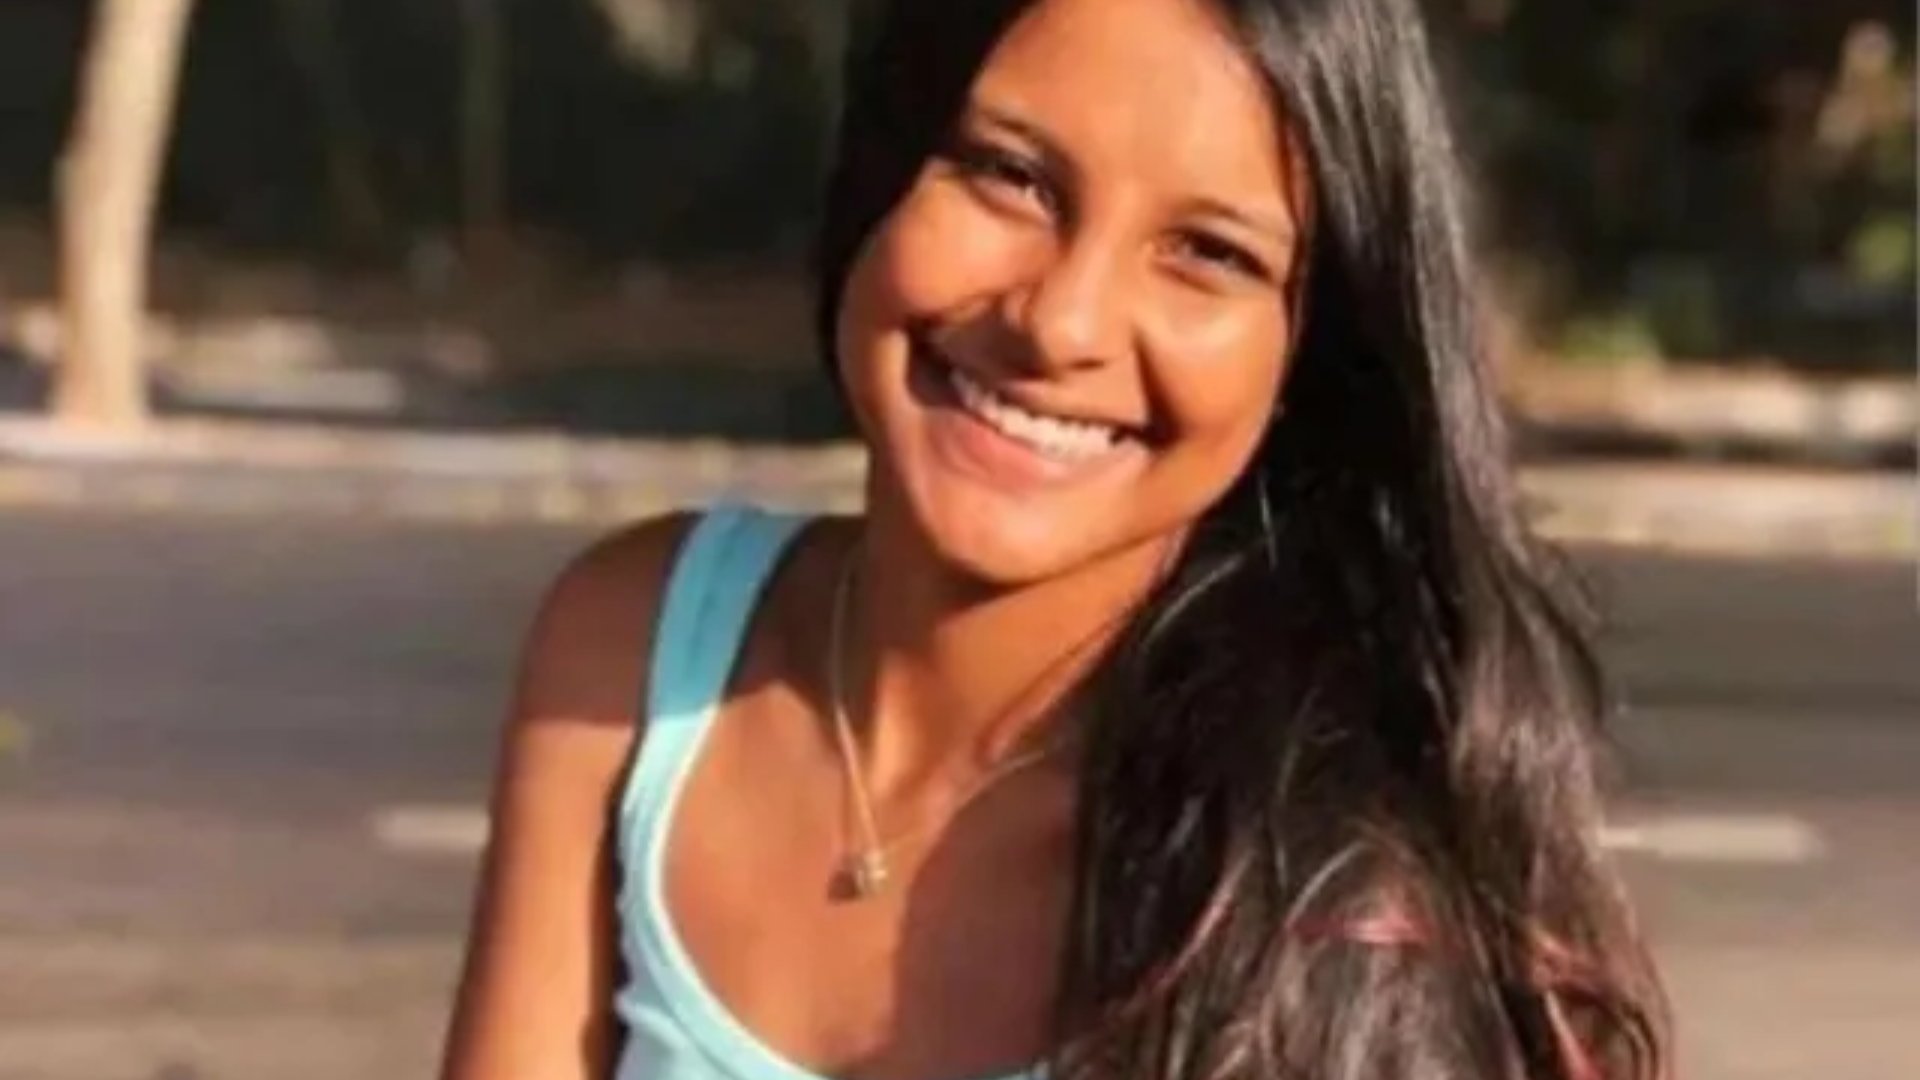 Modelo mirim de 14 anos é encontrada morta em terraço de desconhecida no Piauí